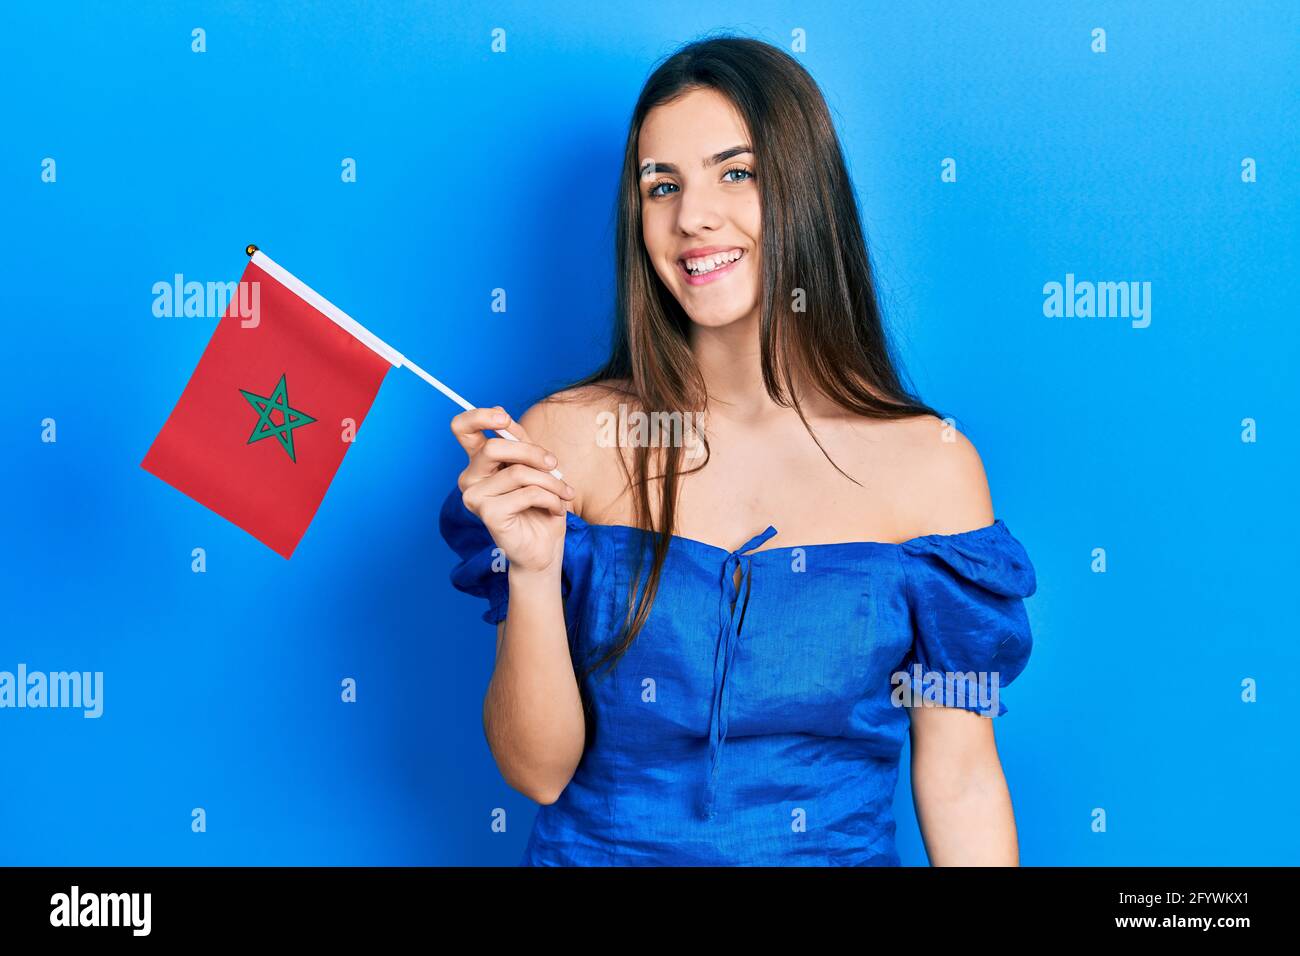 Junge Brünette Teenager hält marokko Flagge positiv und glücklich Stehen und lächeln mit einem selbstbewussten Lächeln, das Zähne zeigt Stockfoto